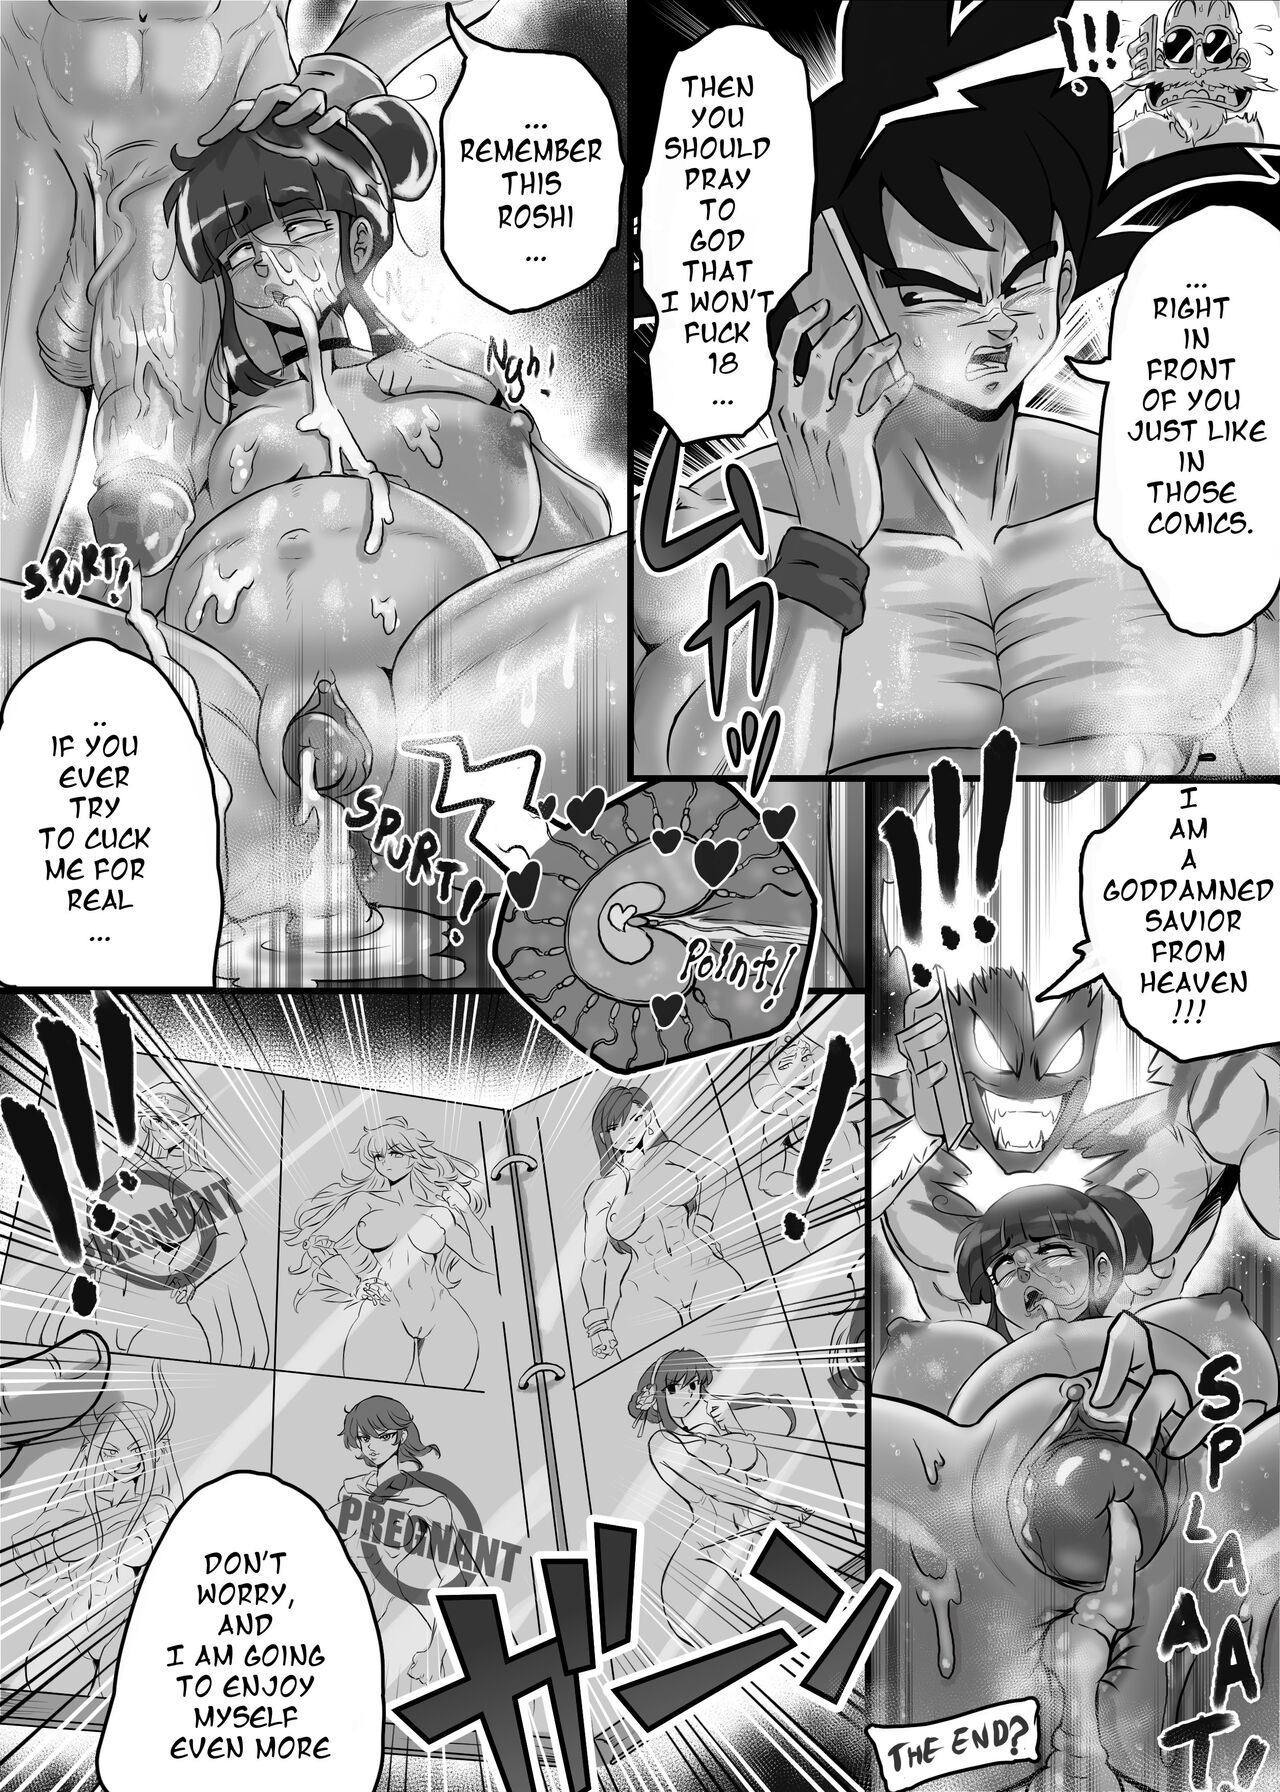 Anime Comics English - Ogi manga comics collection Porn Comic english 07 - Porn Comic